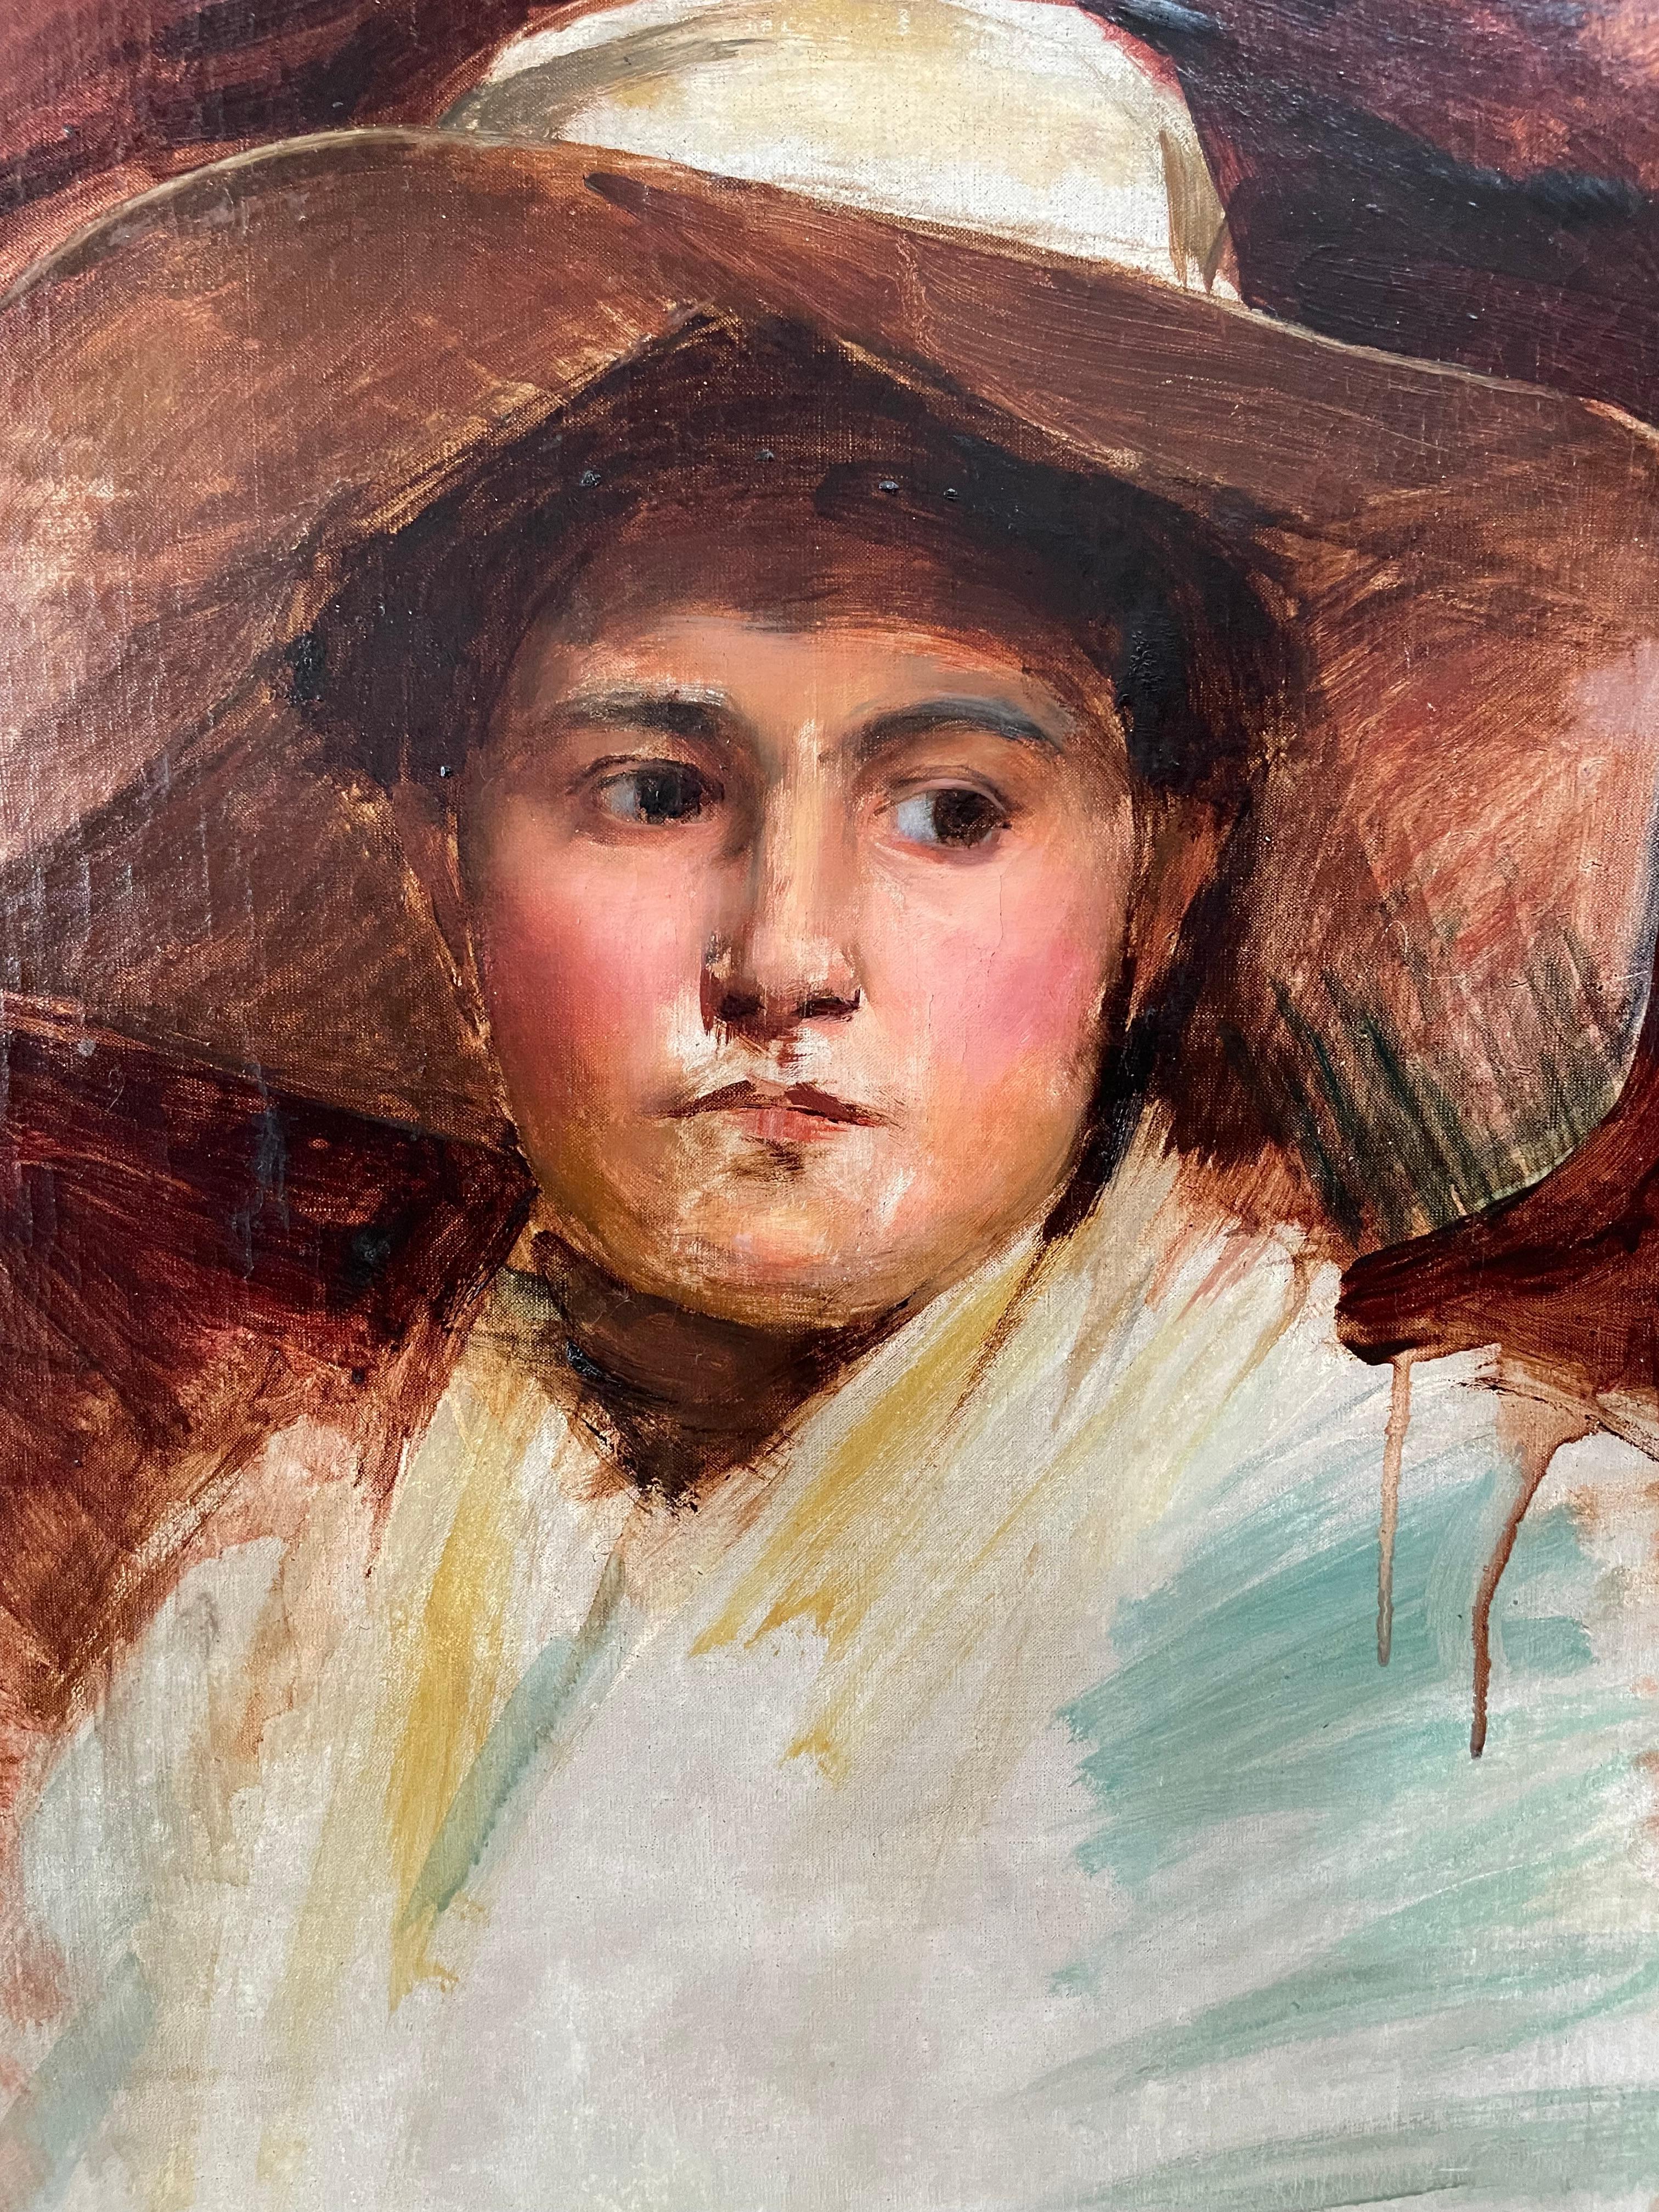 Öl auf feiner Leinwand 19. Porträt einer jungen Bäuerin mit Hut, die Besonderheit seines Gemäldes ist, dass er nicht vollständig ausgeführt wurde, vor allem auf der Ebene der sein Hemd. Der Ausdruck des Looks unterstreicht die Ausstrahlung des